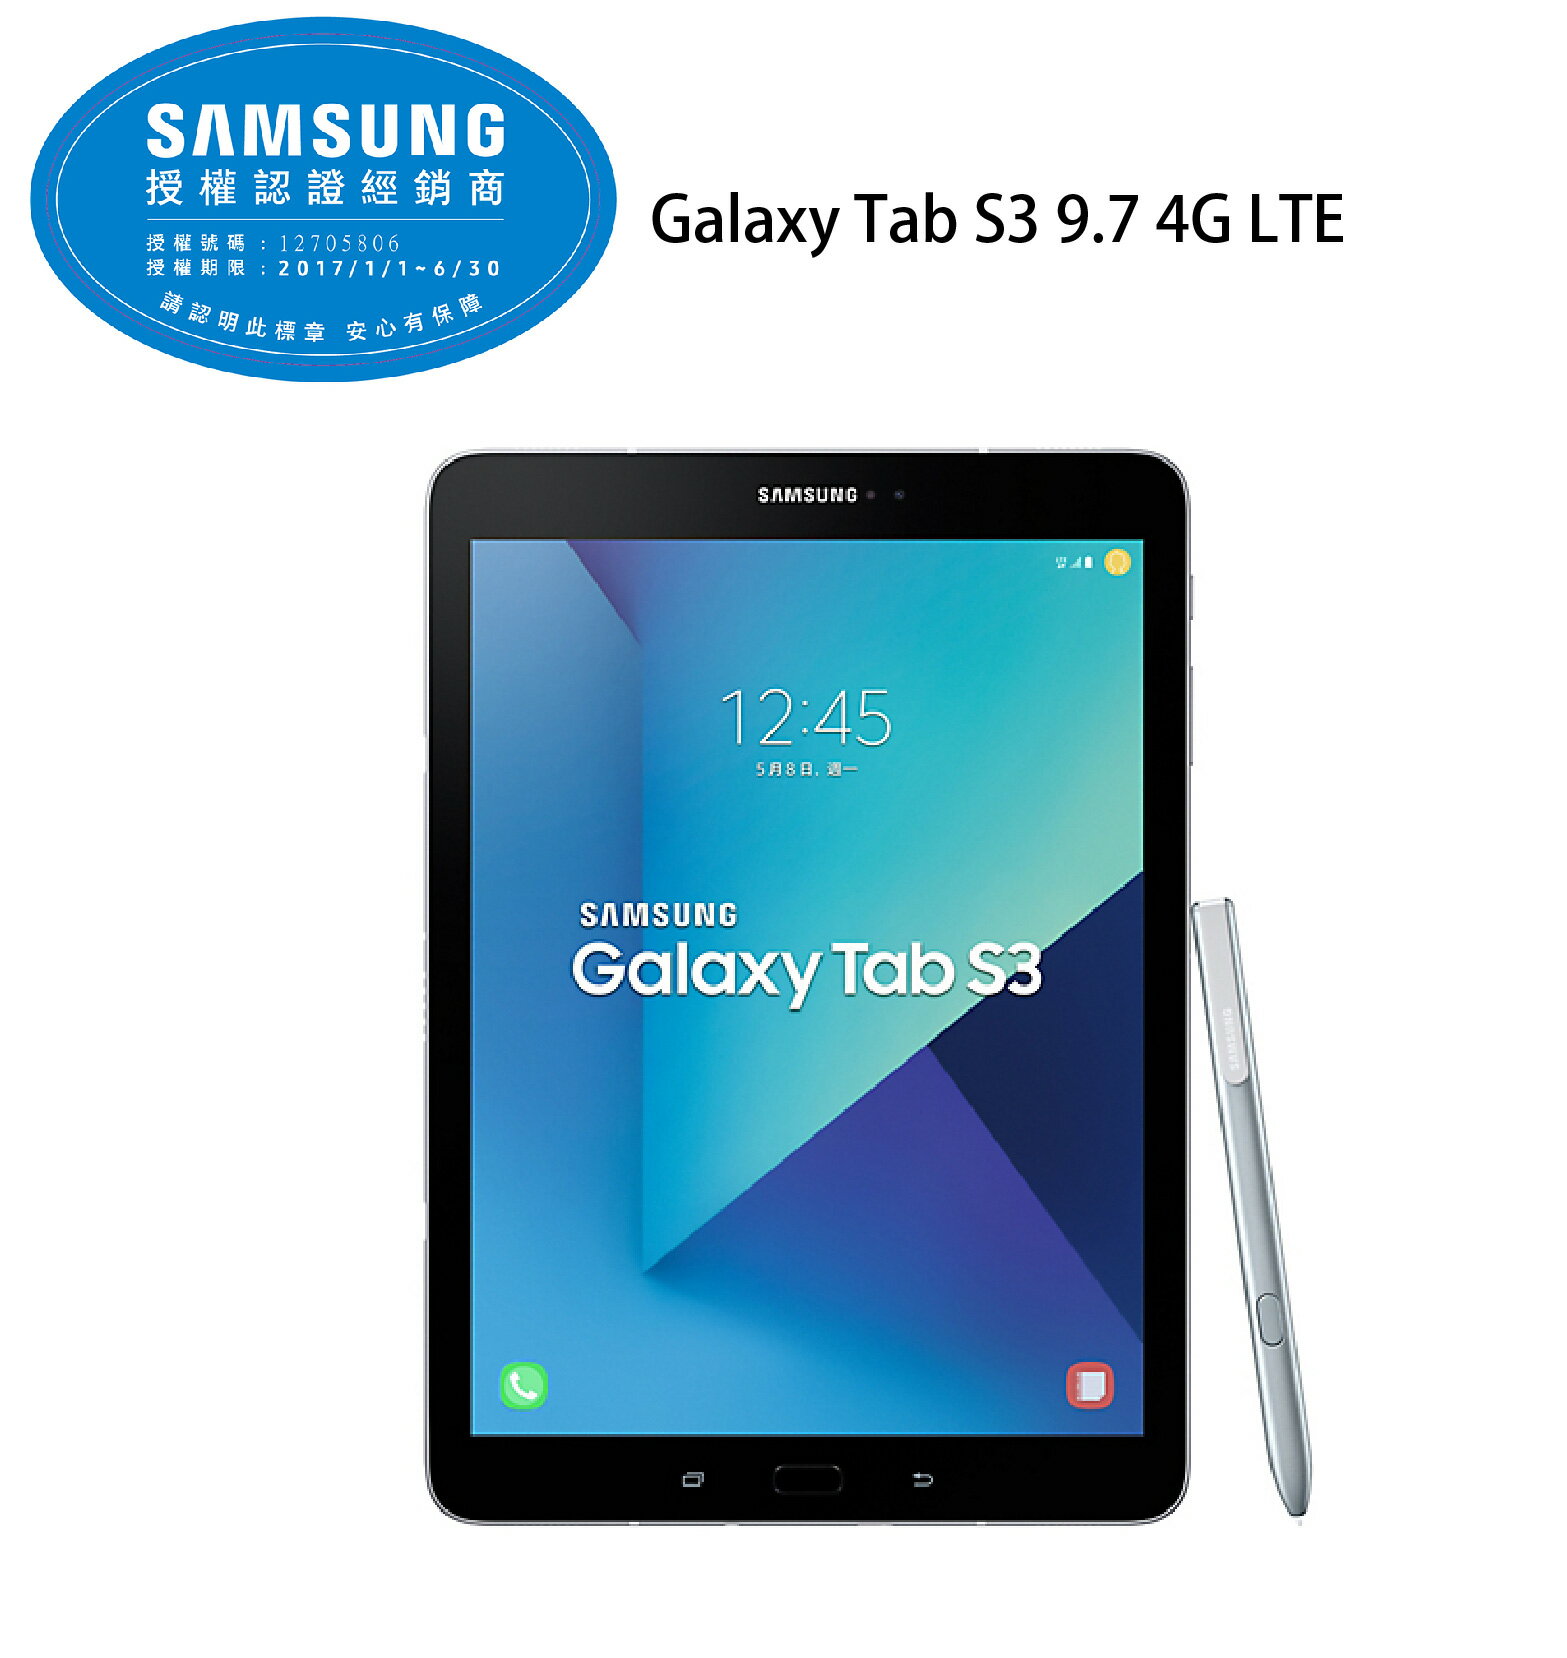  三星 Samsung GALAXY Tab S3 9.7 4G LTE 平板電腦 4G/32G -銀《?盒附S Pe?》《贈5200行動電源+原廠皮套》 分享